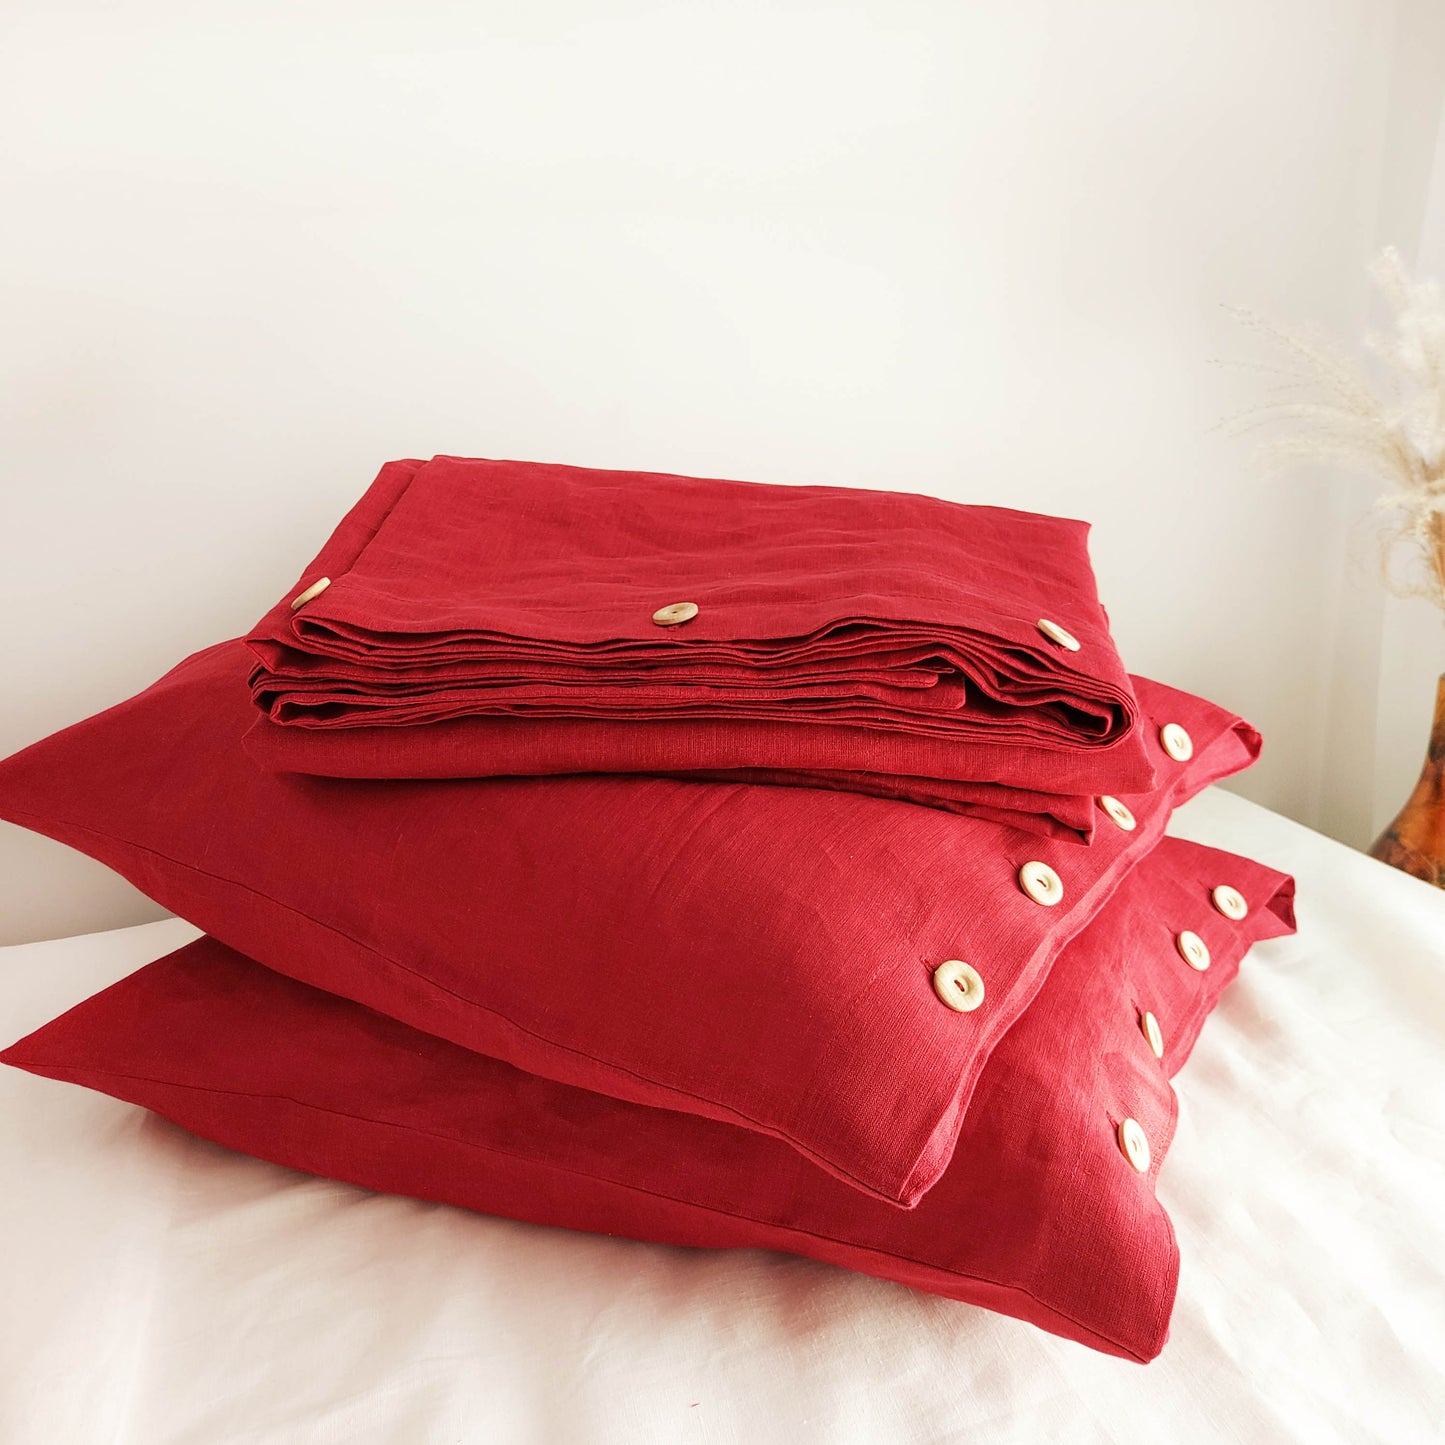 Linen Duvet Cover in Dark Red Color, Duvet Cover